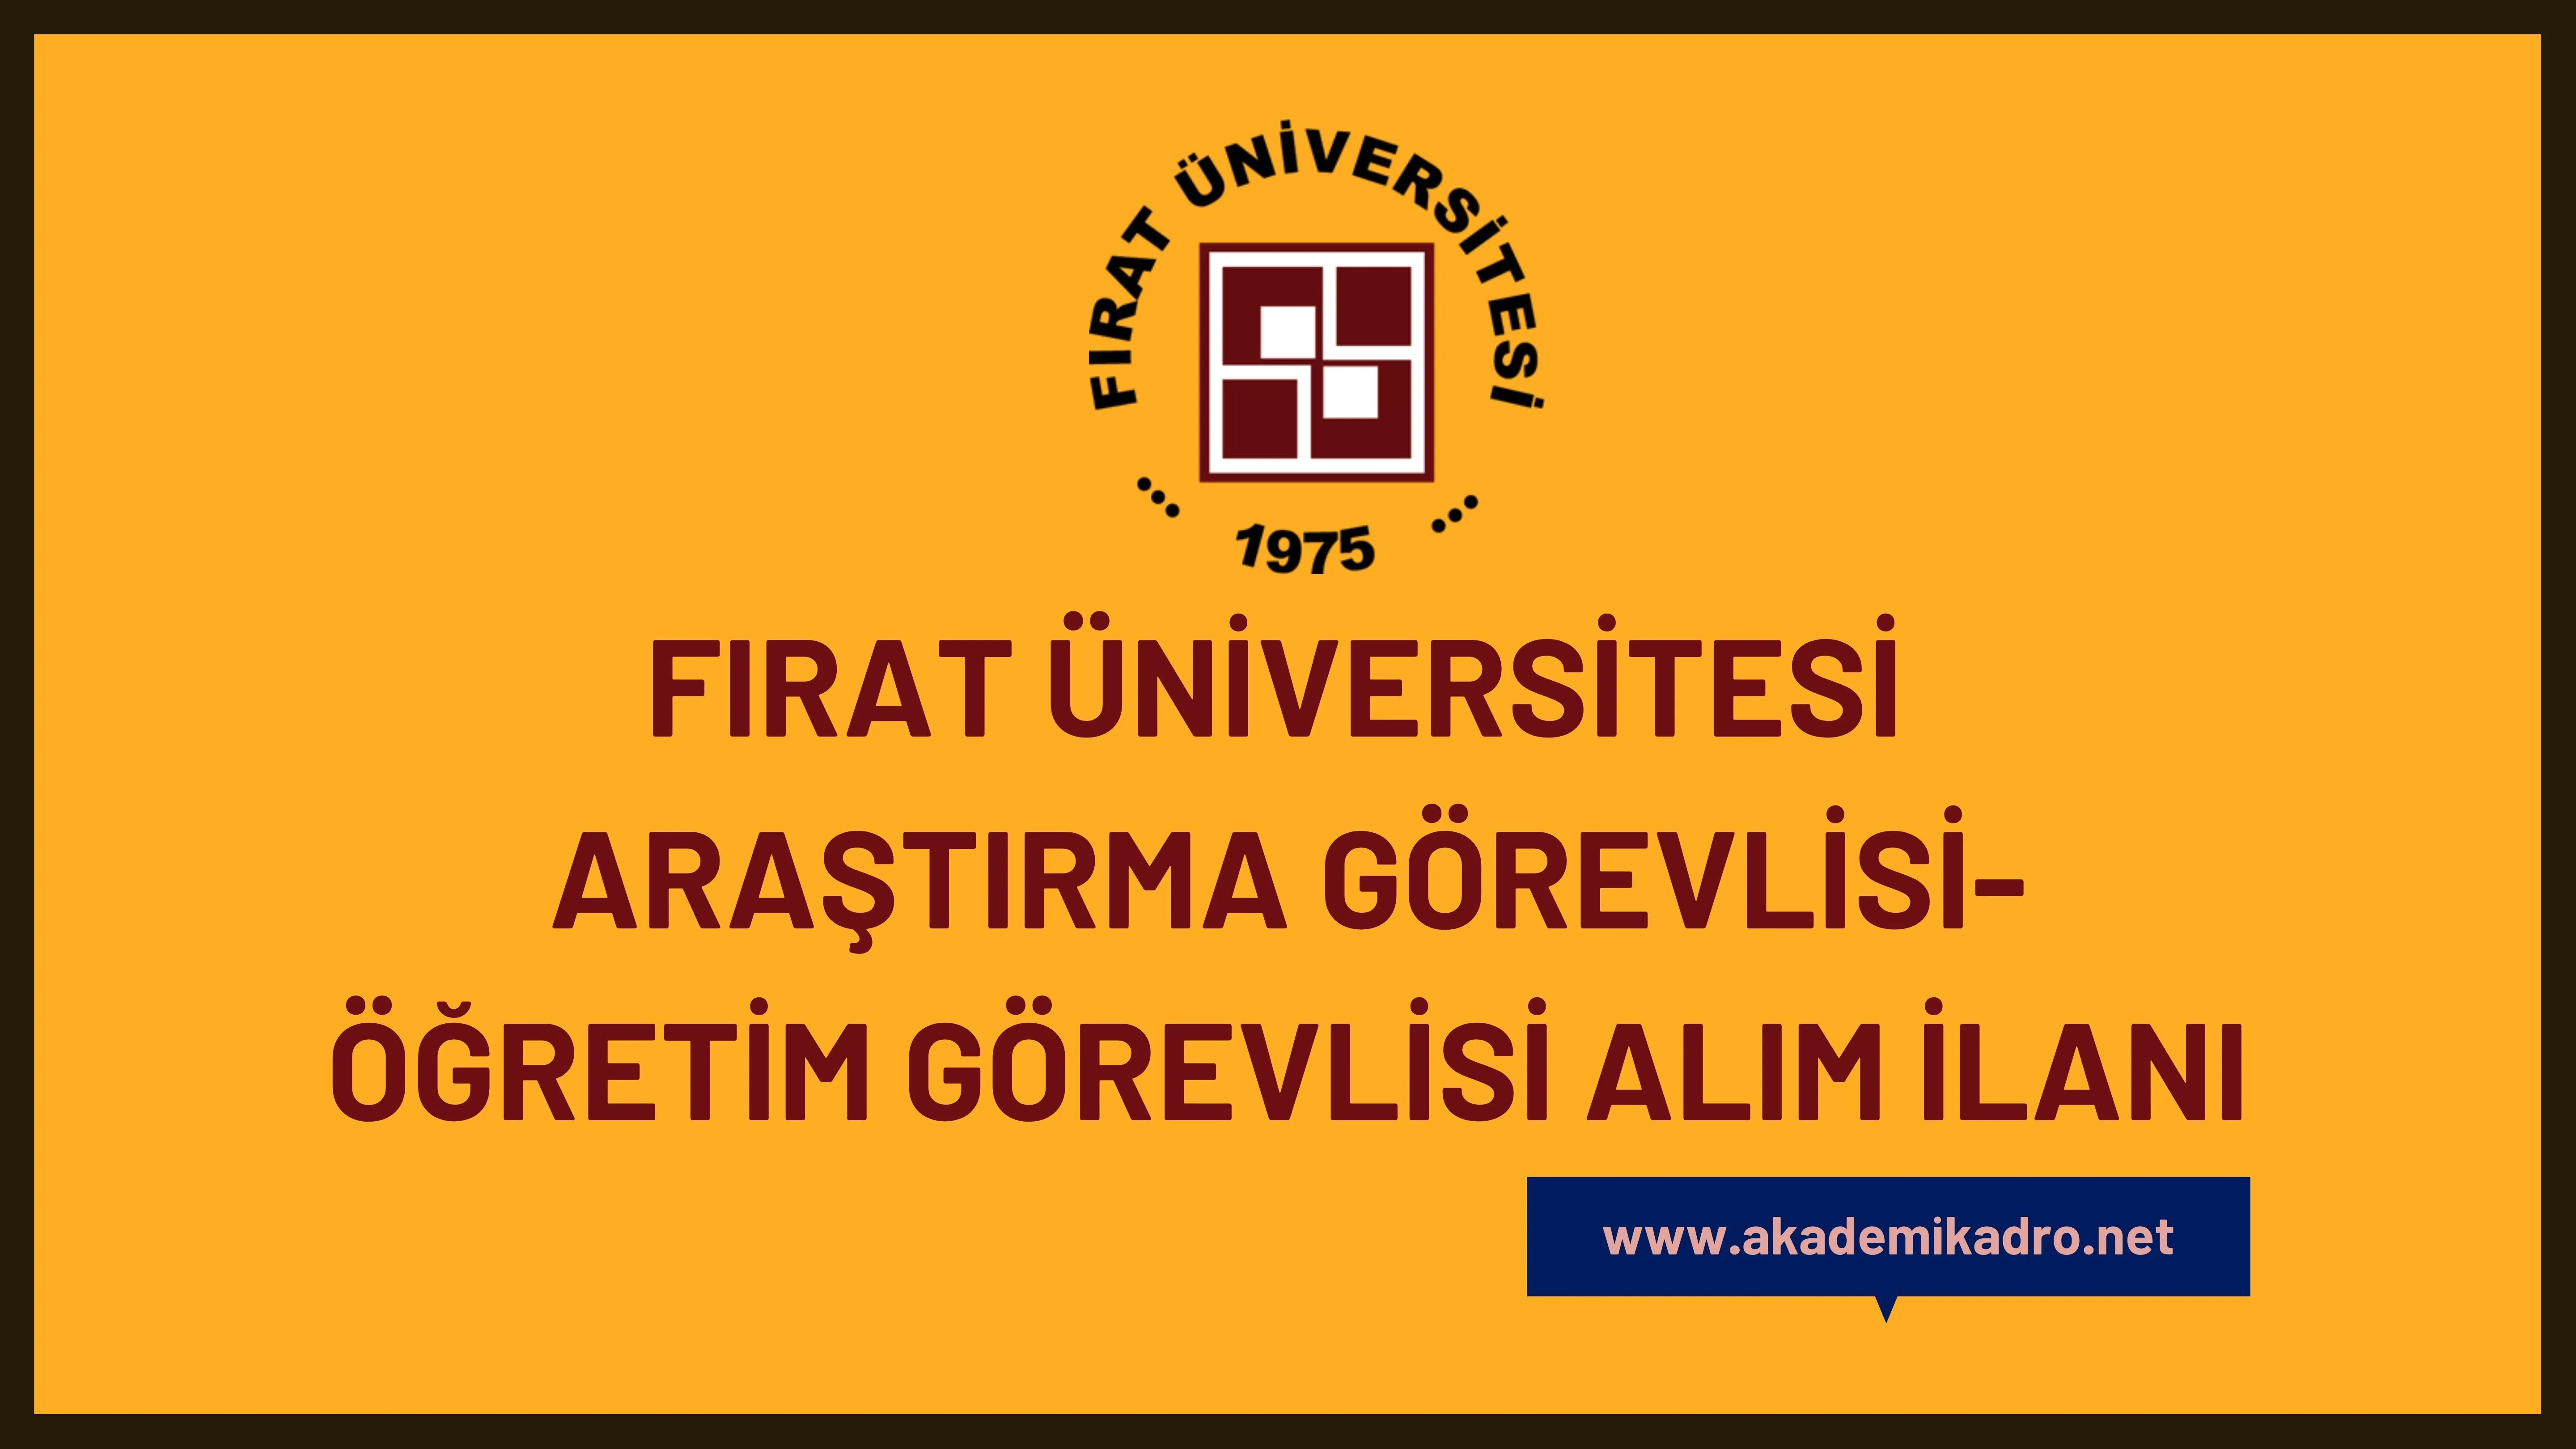 Fırat Üniversitesi 14 Araştırma görevlisi ve 5 Öğretim görevlisi alacak.